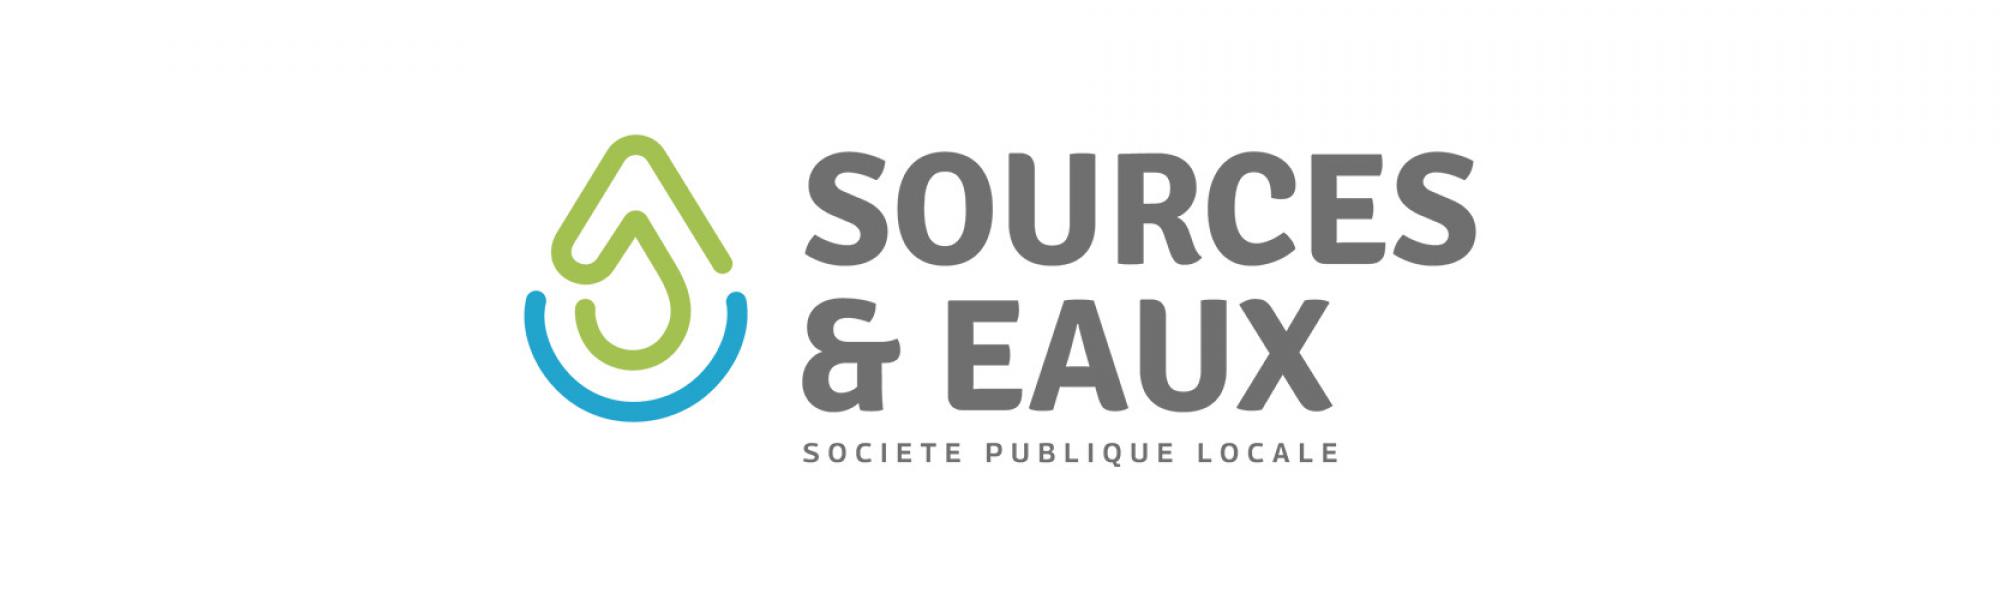 Bandeau SPL Sources & Eaux